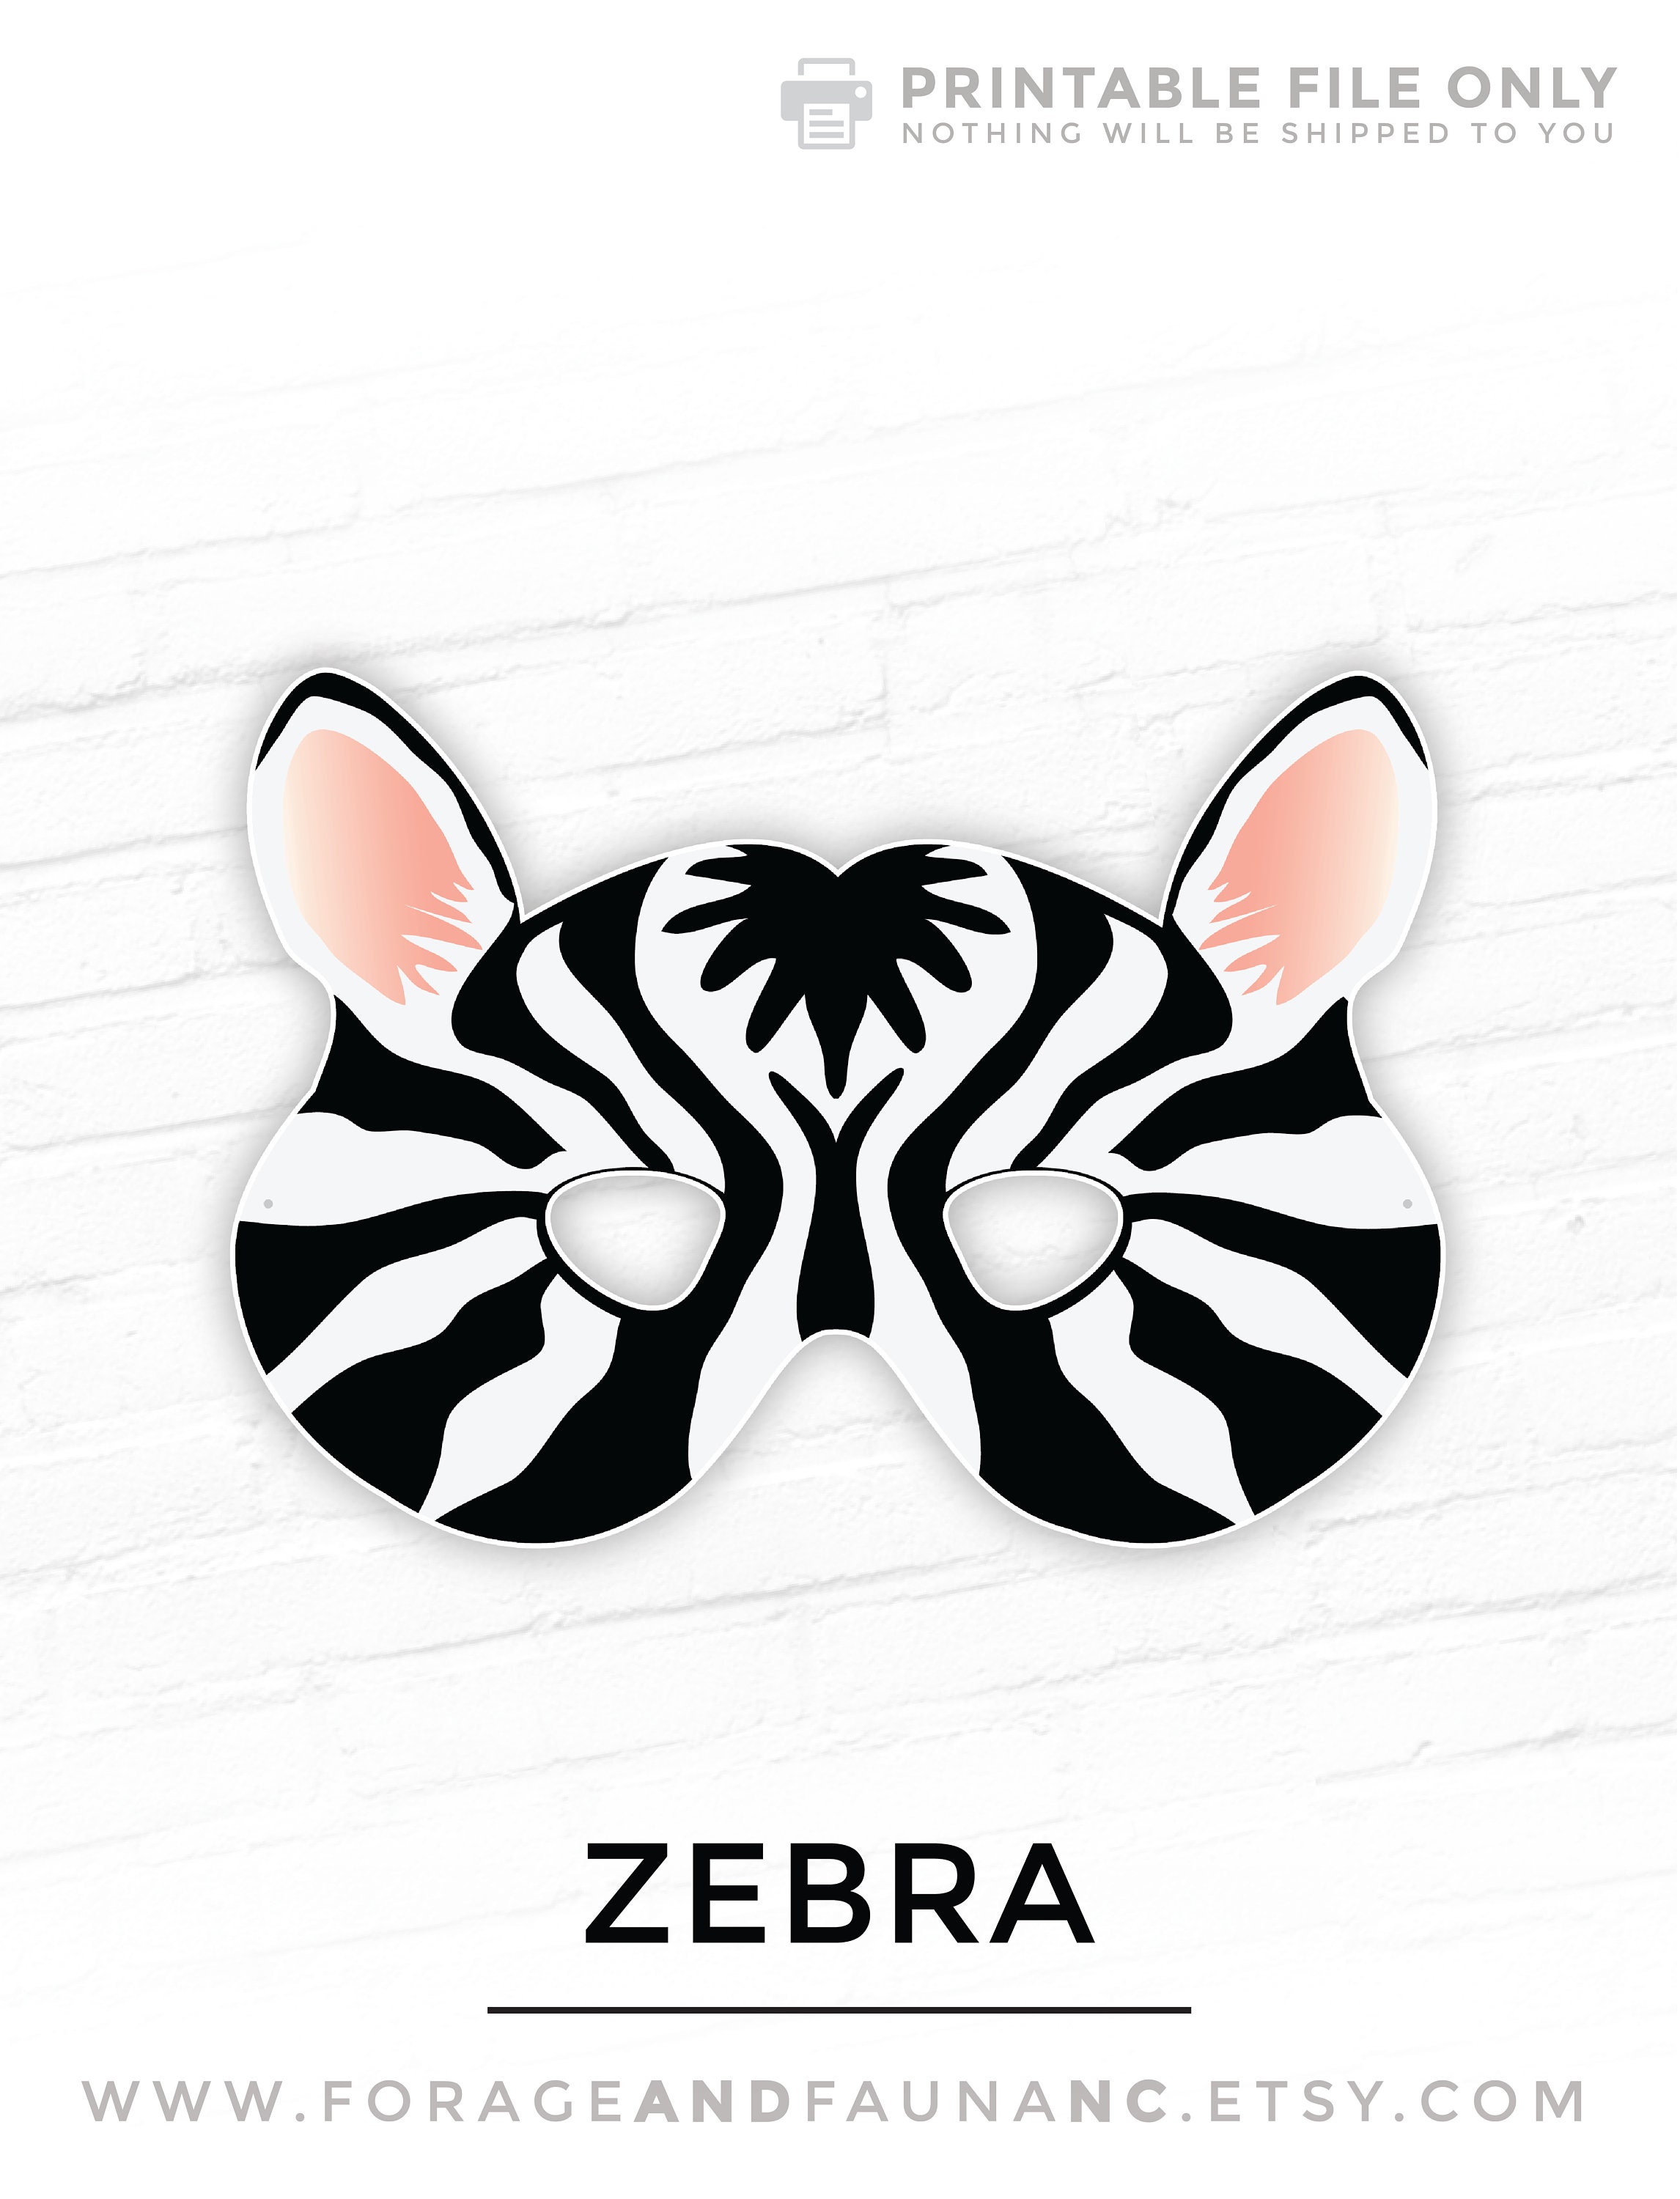 Zebra Animal Mask Halloween Masks Party Mask Costume Etsy